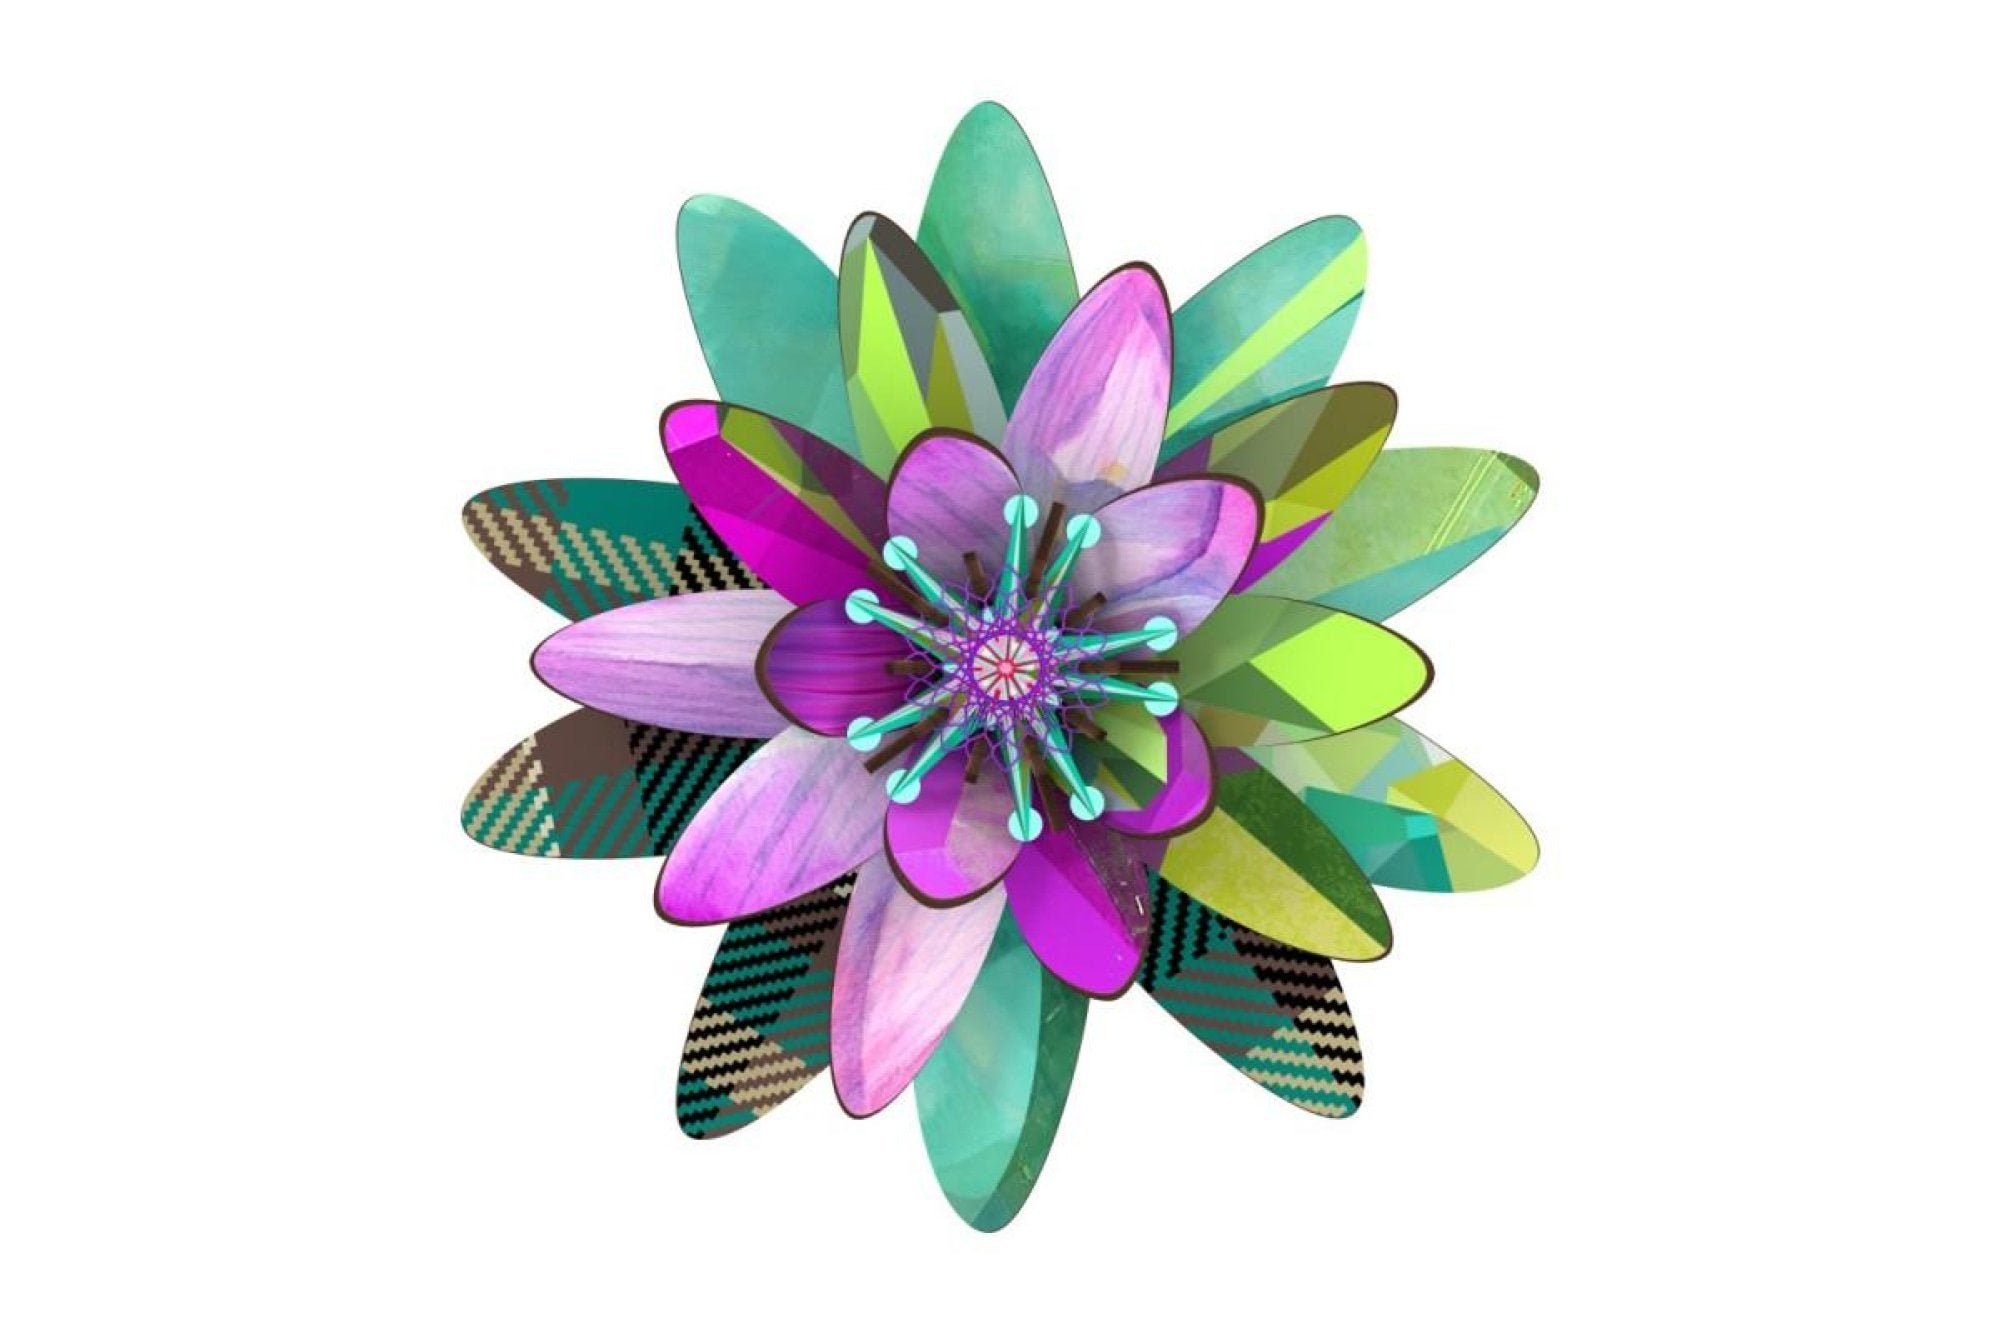 3D virág dekoráció - VENERE 3D fali virág dekoráció fából